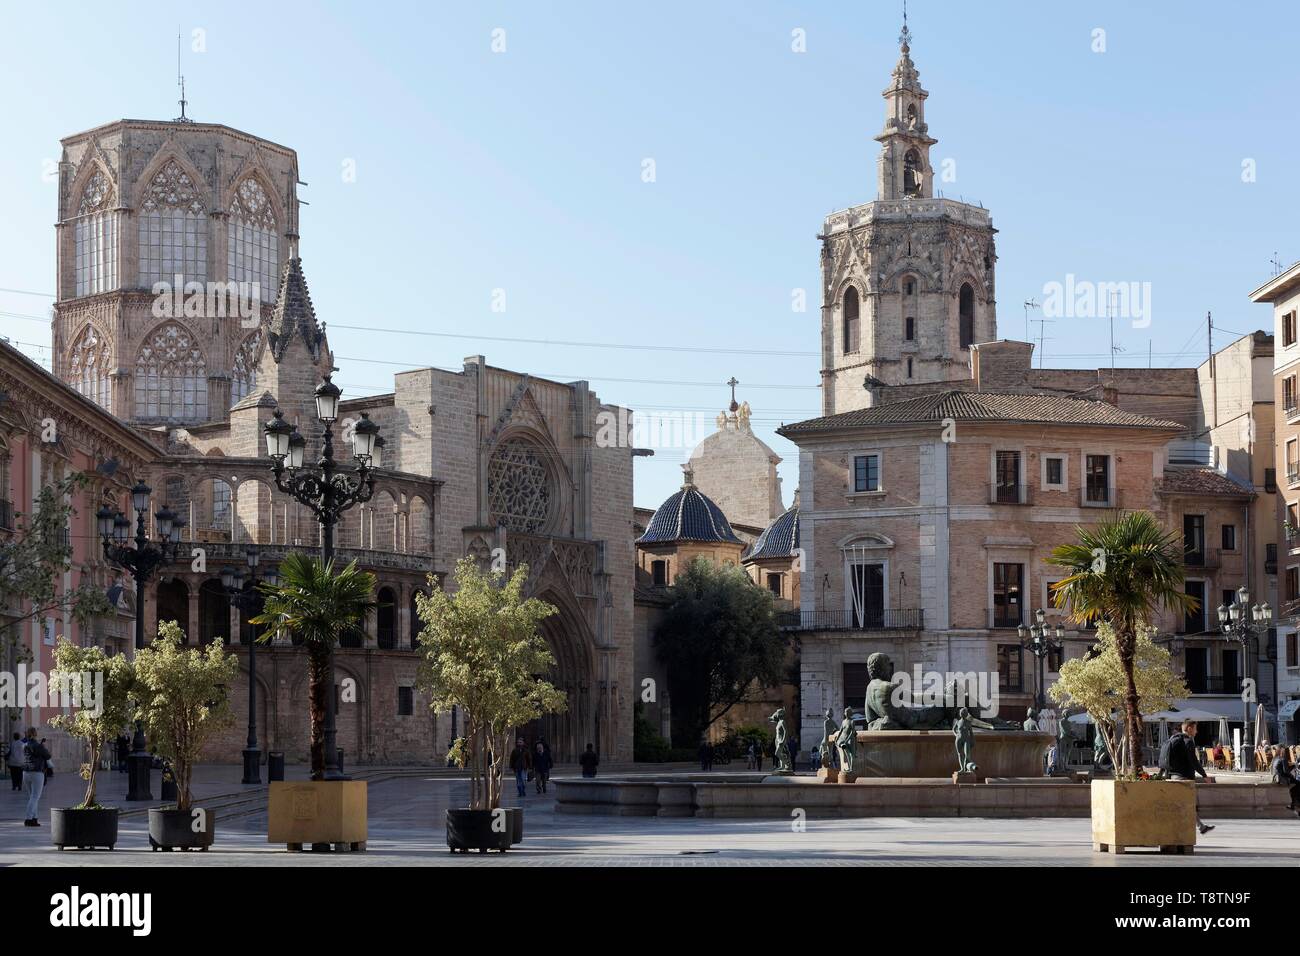 Plaza de la Mare de Deu, également la place de la Vierge et sur la cathédrale Miguelete tower, Valencia, Espagne Banque D'Images